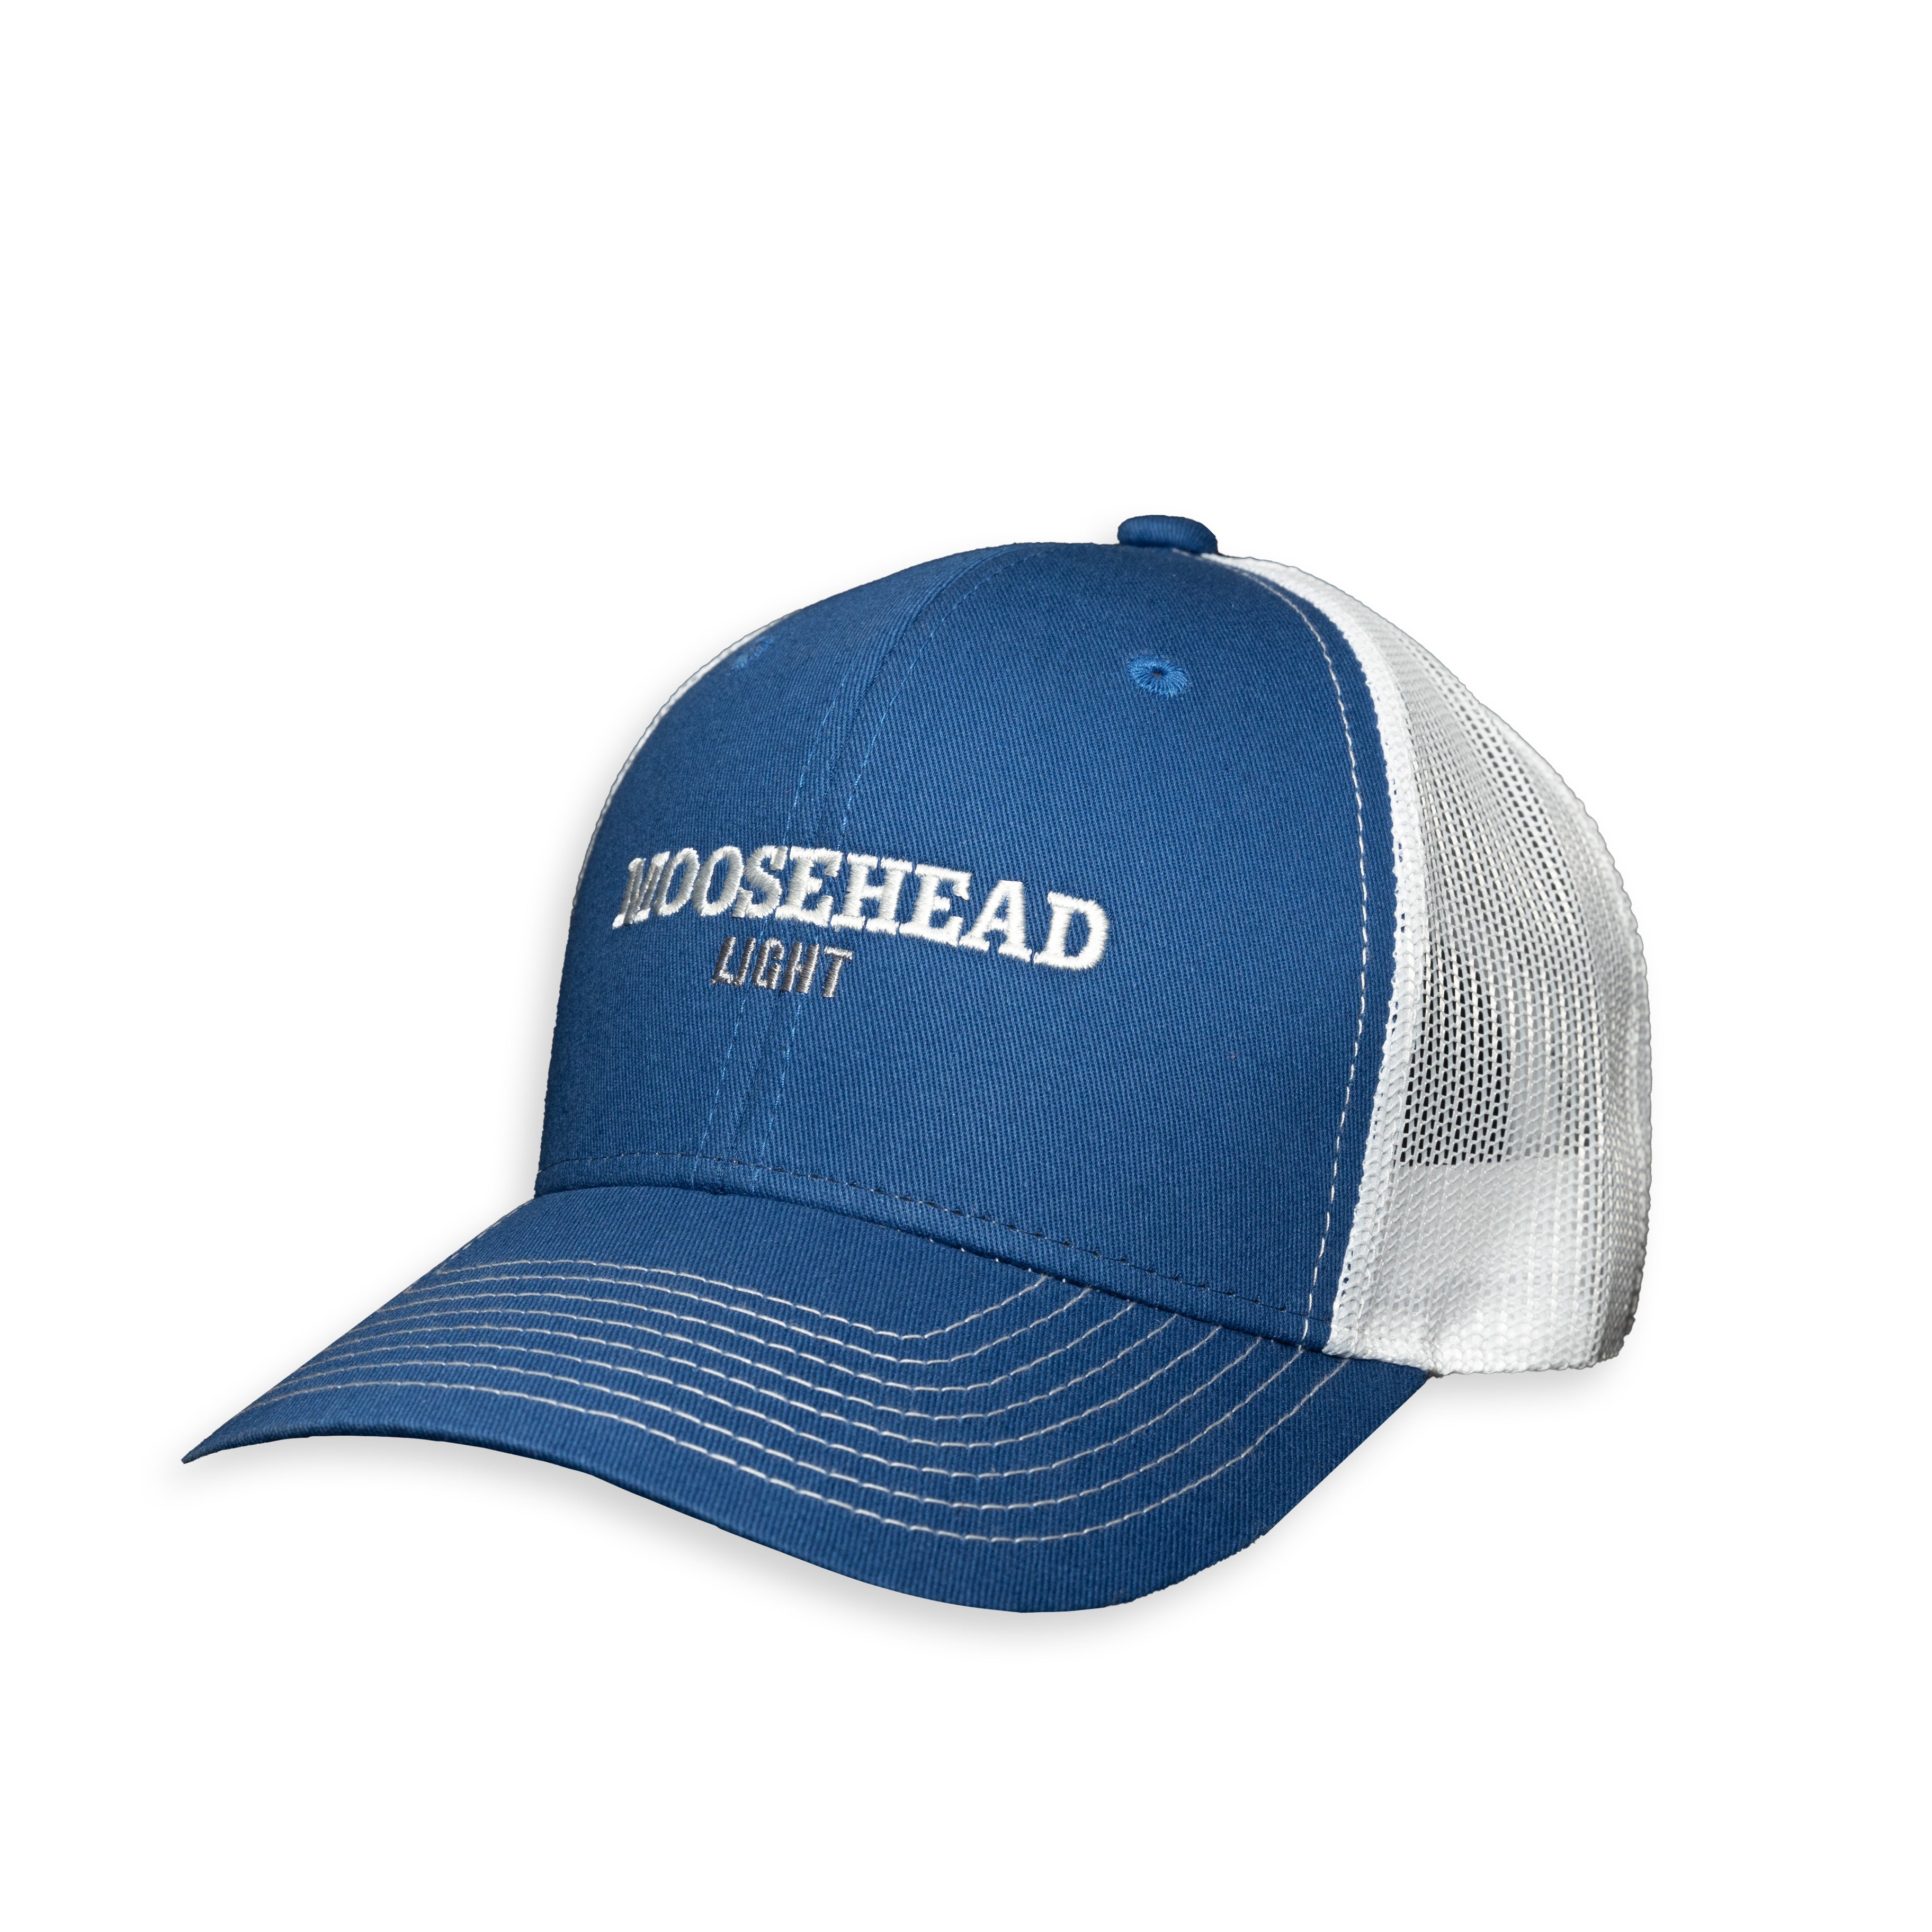 Moosehead Light Trucker Hat